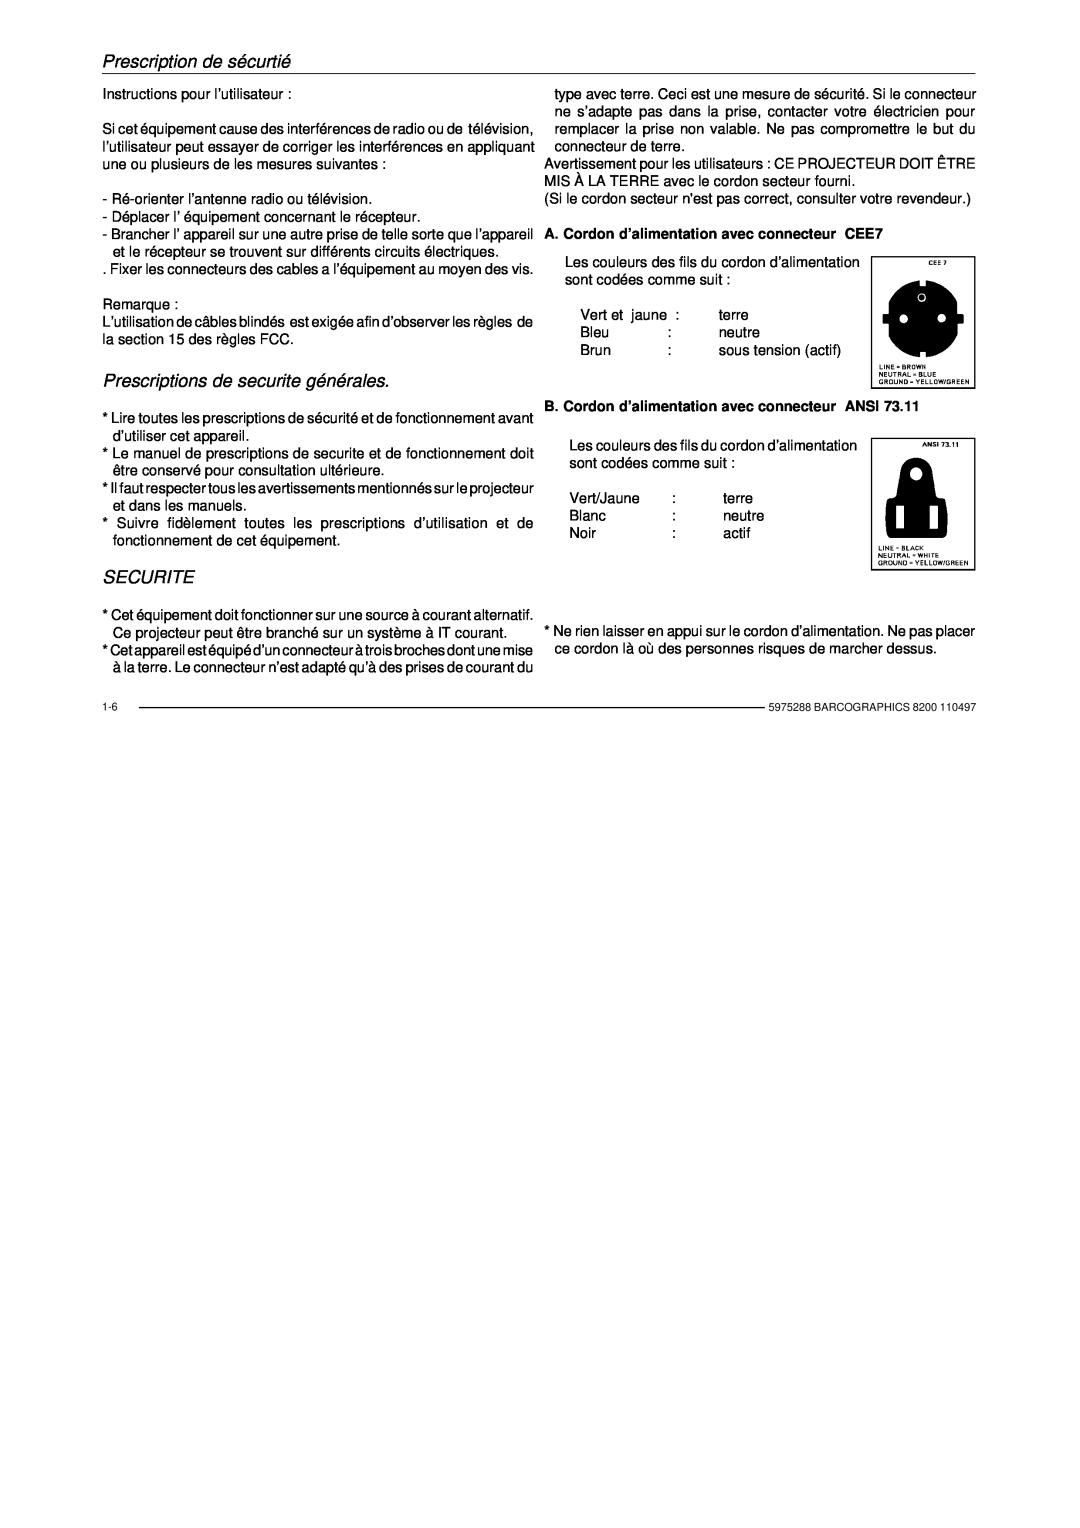 Barco R9001330 owner manual Prescriptions de securite générales, Securite, A. Cordon d’alimentation avec connecteur CEE7 